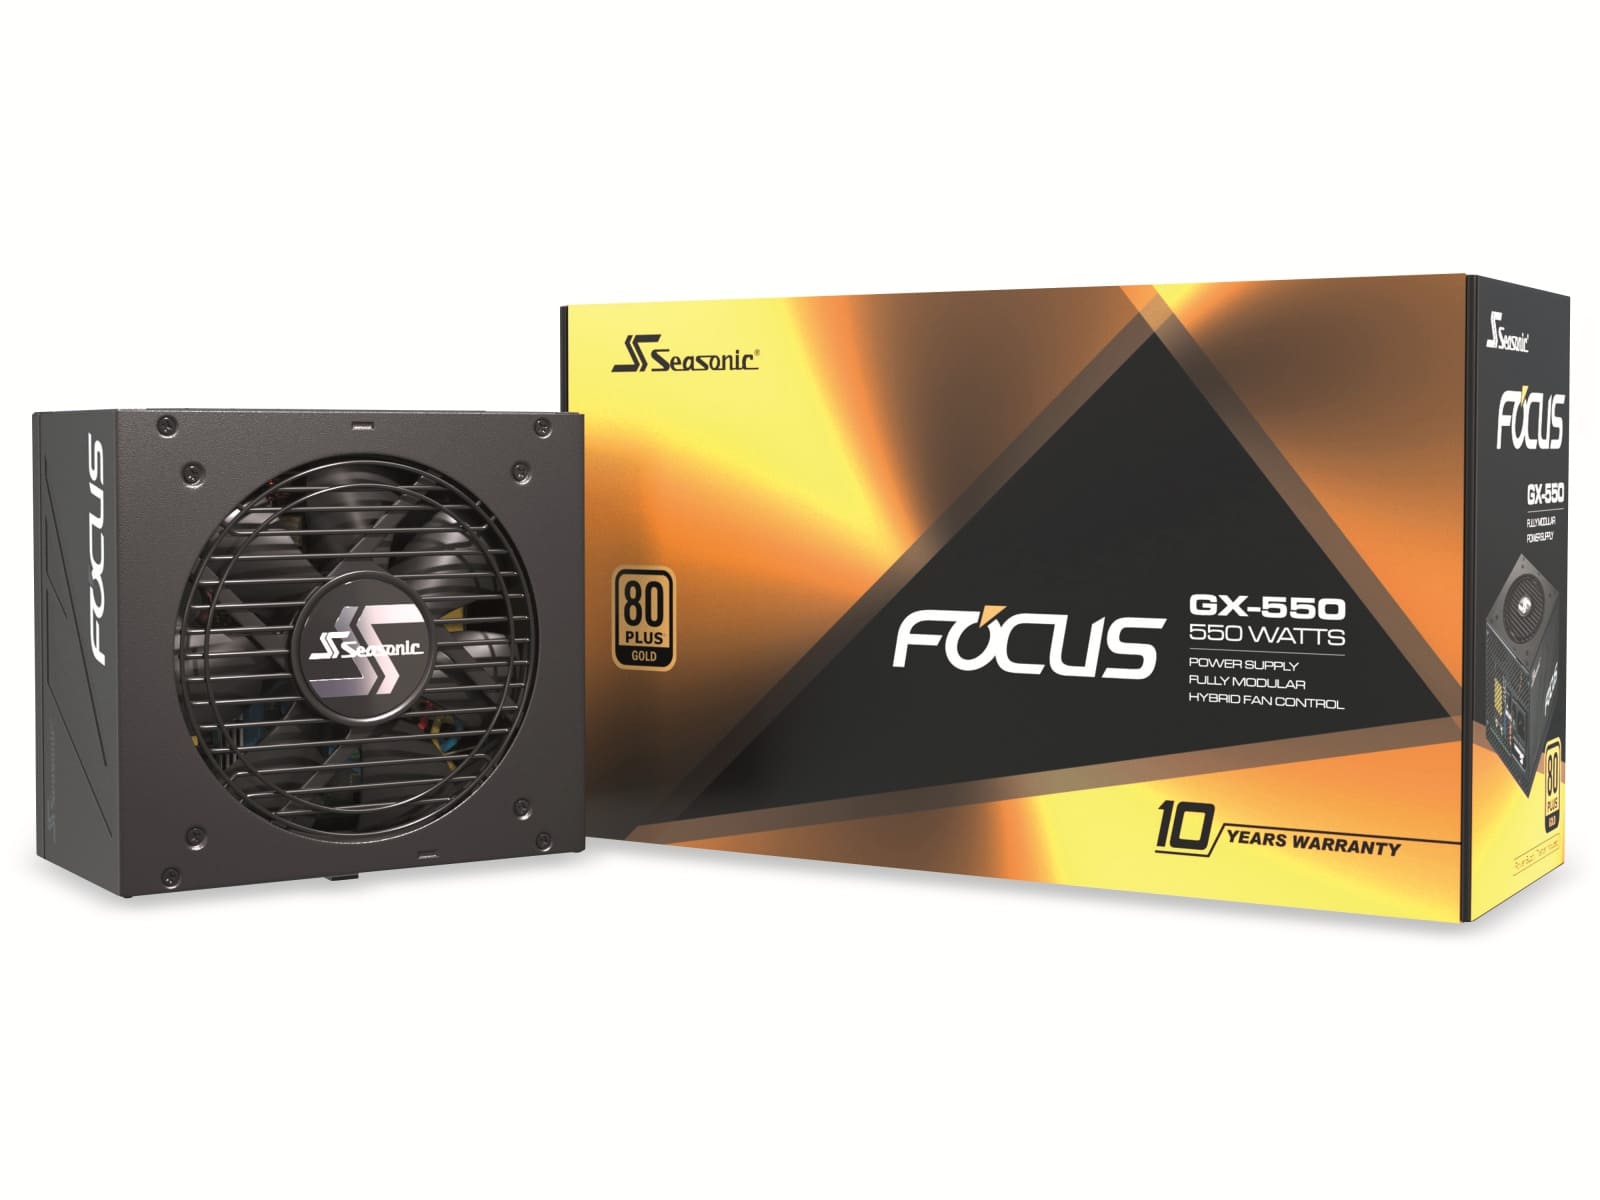 SEAGATE PC-Netzteil SEASONIC FOCUS-GX-550, 550 W, 80+ Gold